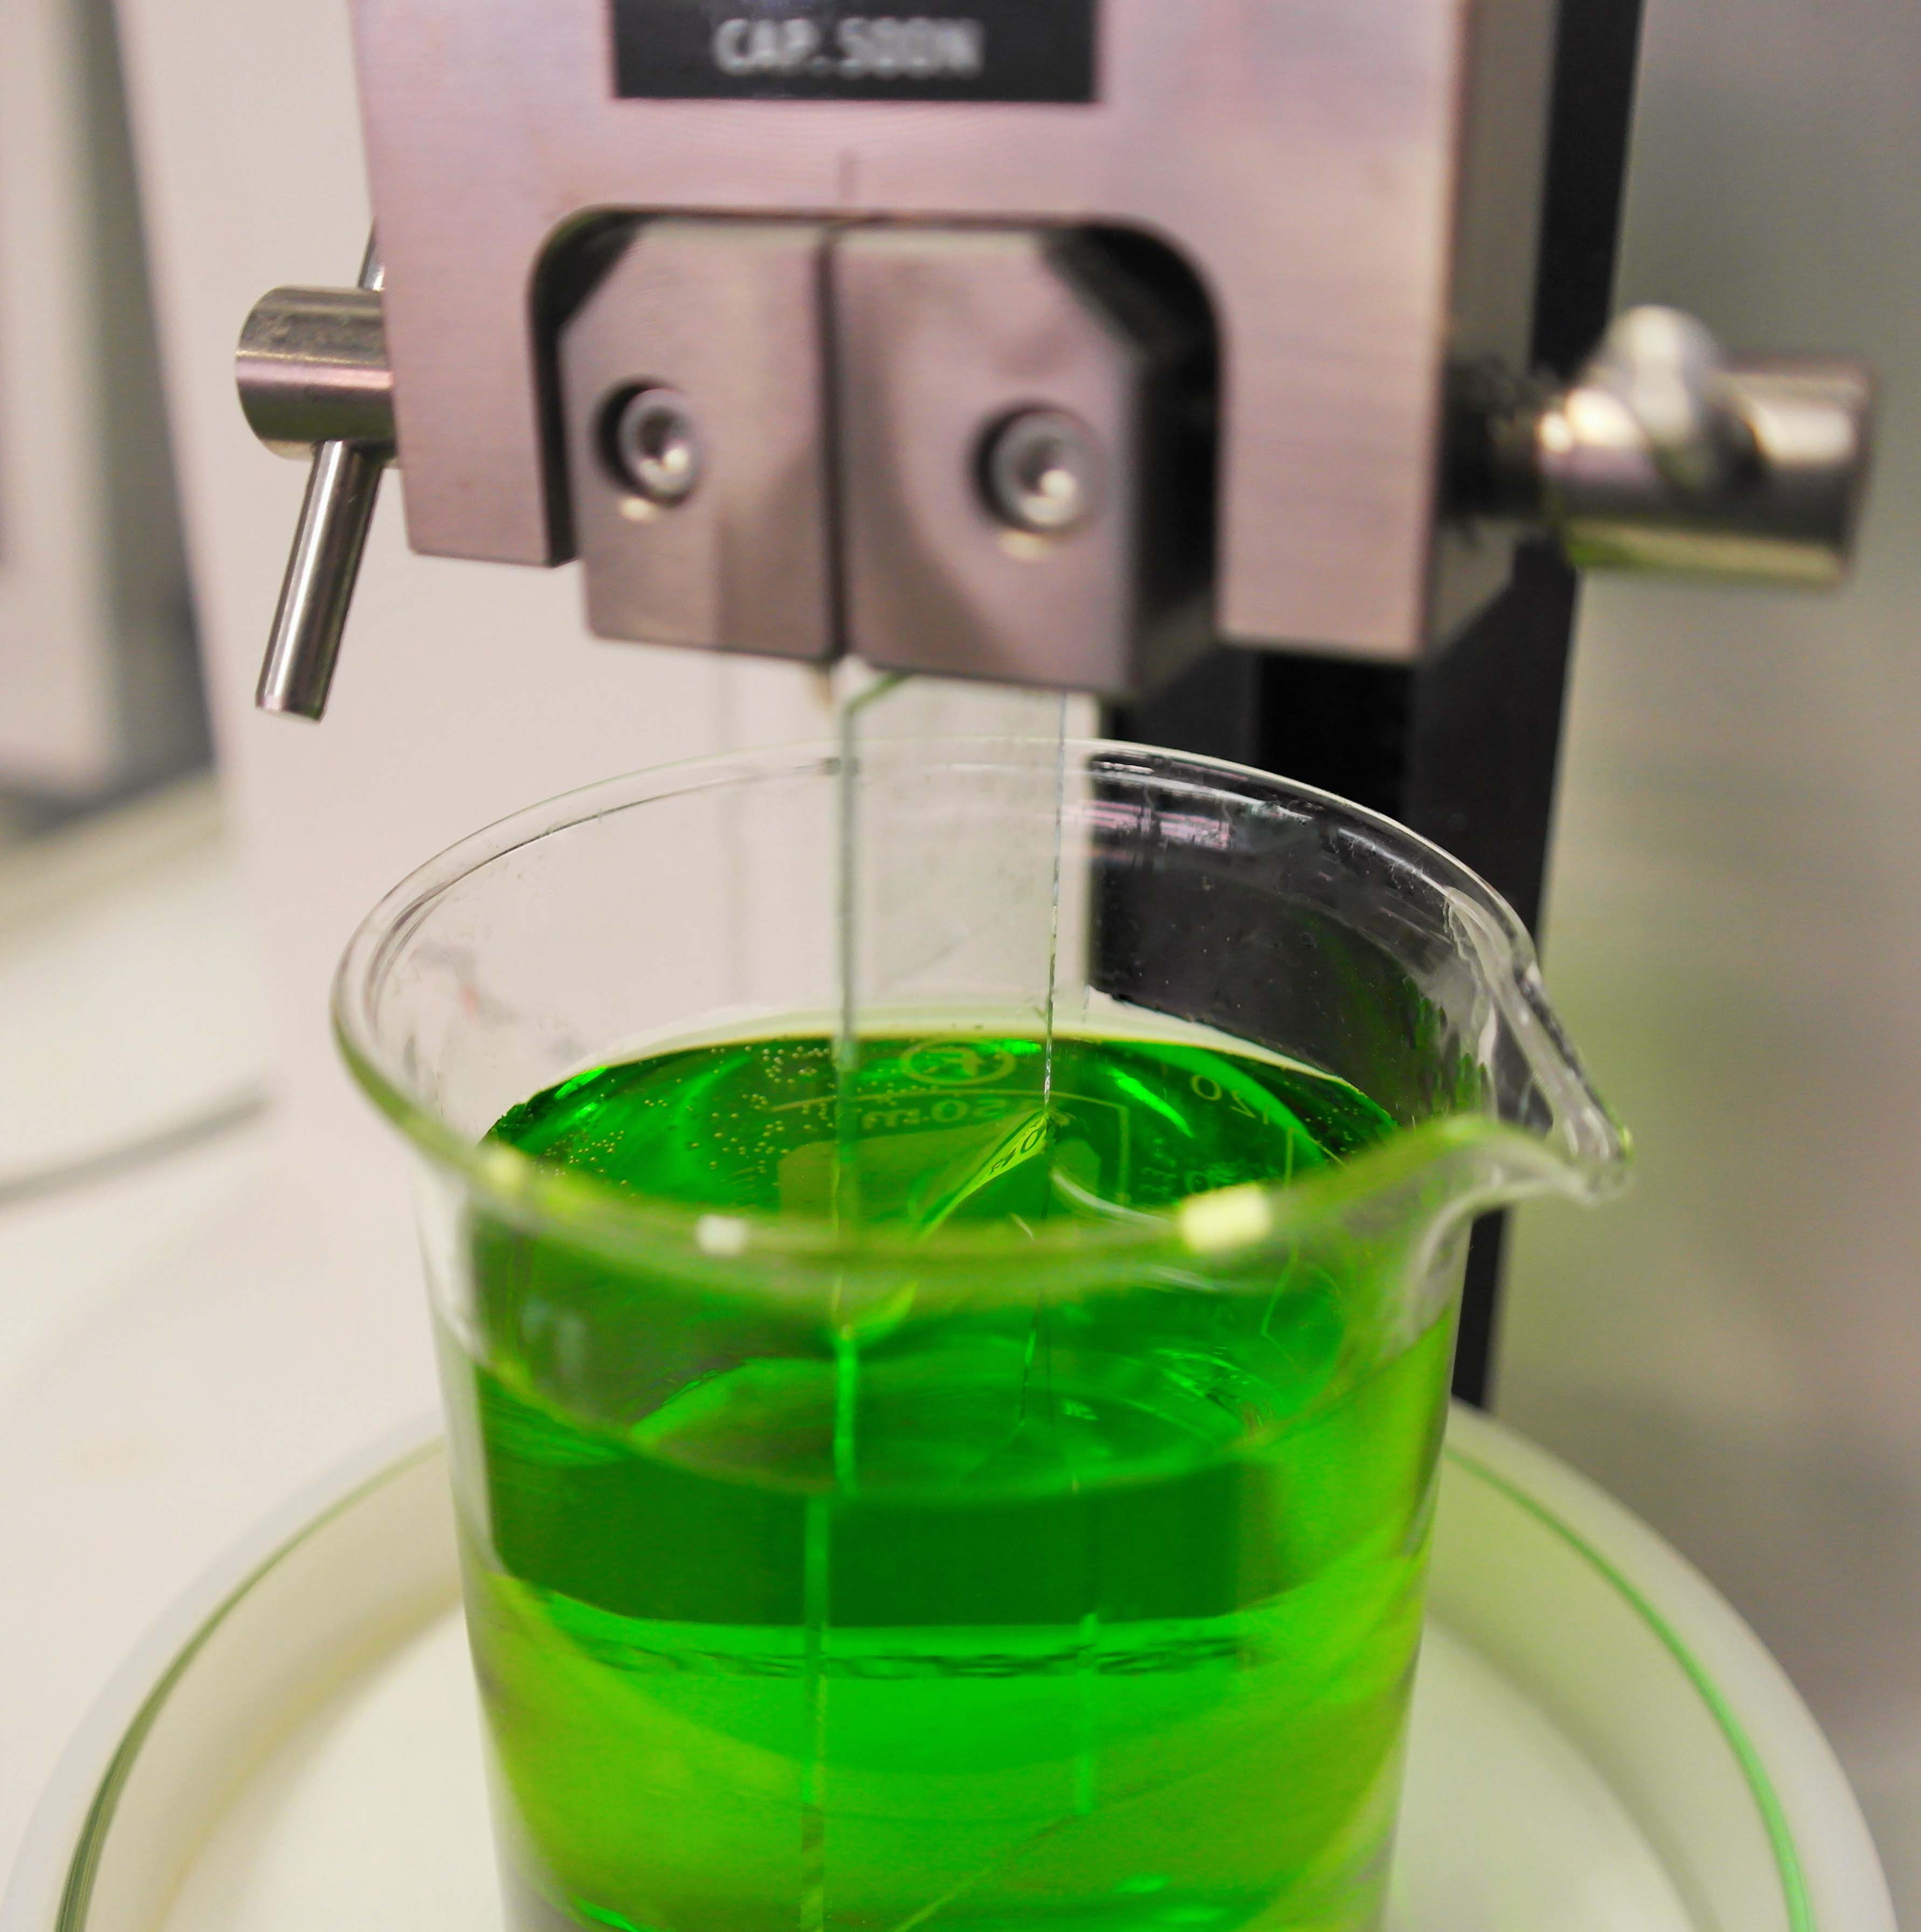 Es erfolgt eine Tauchbeschichtung einer Glasprobe in einer grünen Flüssigkeit.